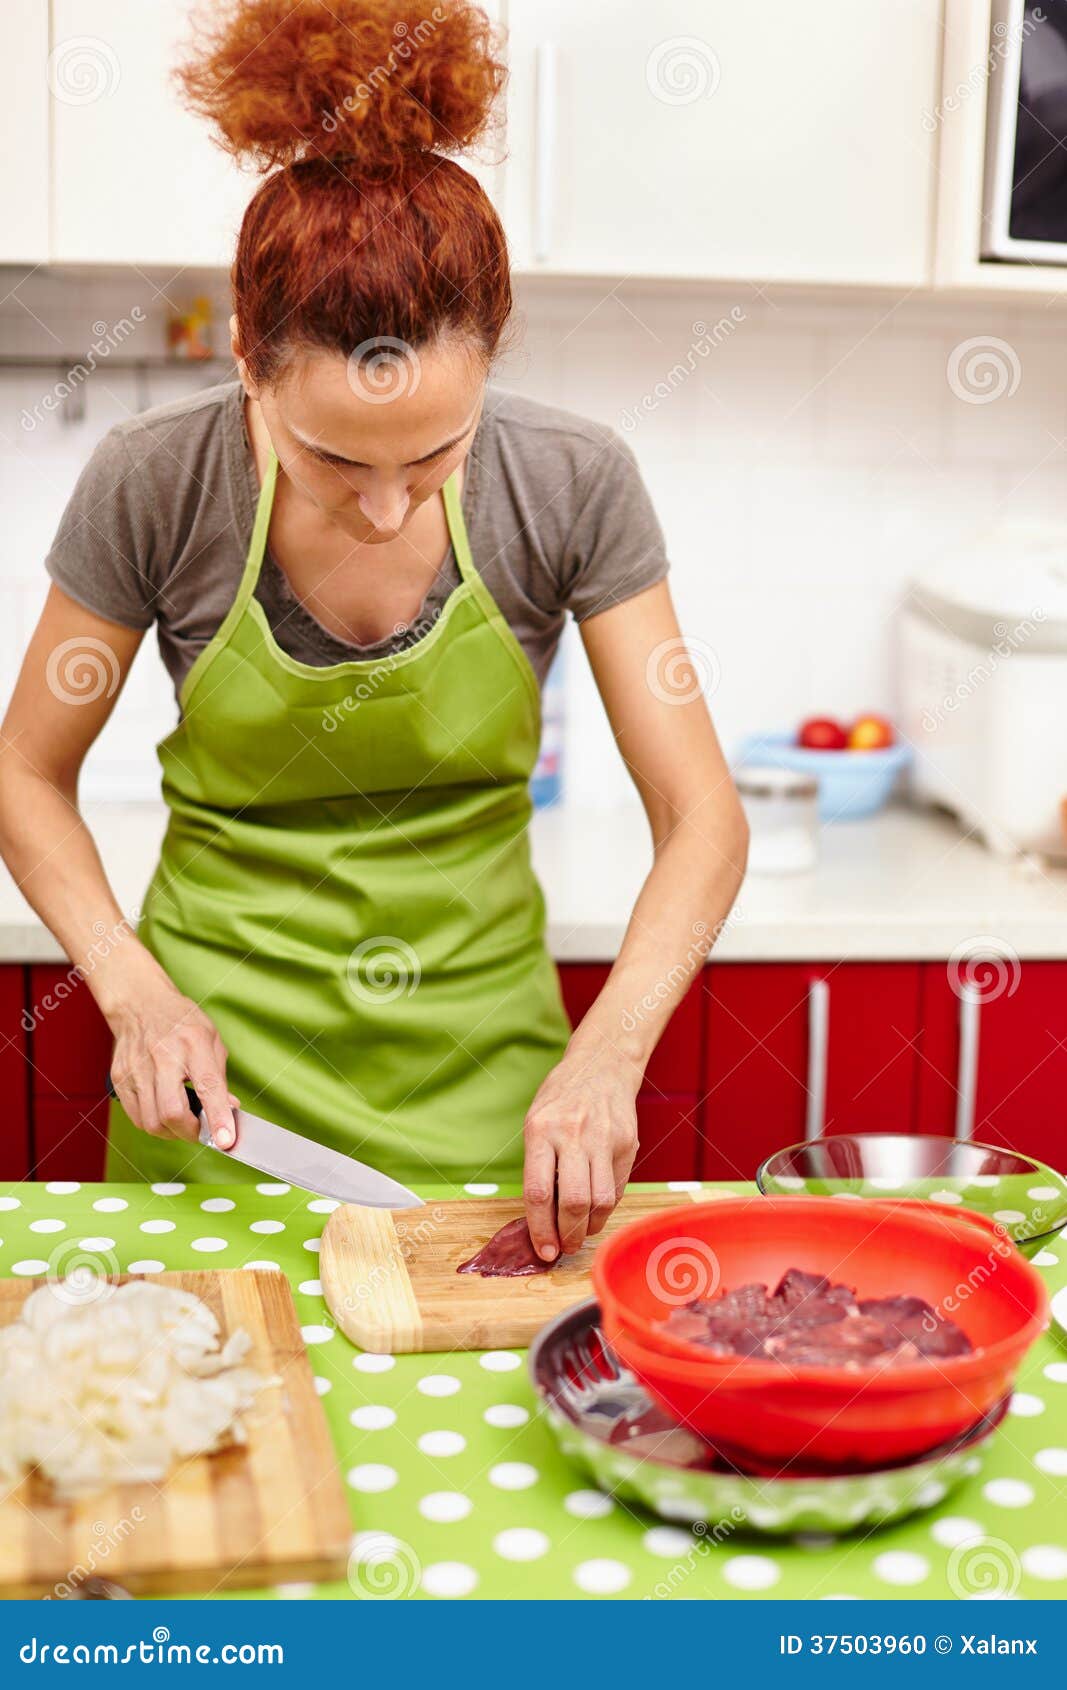 Cortar el hígado de pollo para la cena. Mujer caucásica que corta el hígado de pollo en un tablero de madera, al lado de la cebolla cortada